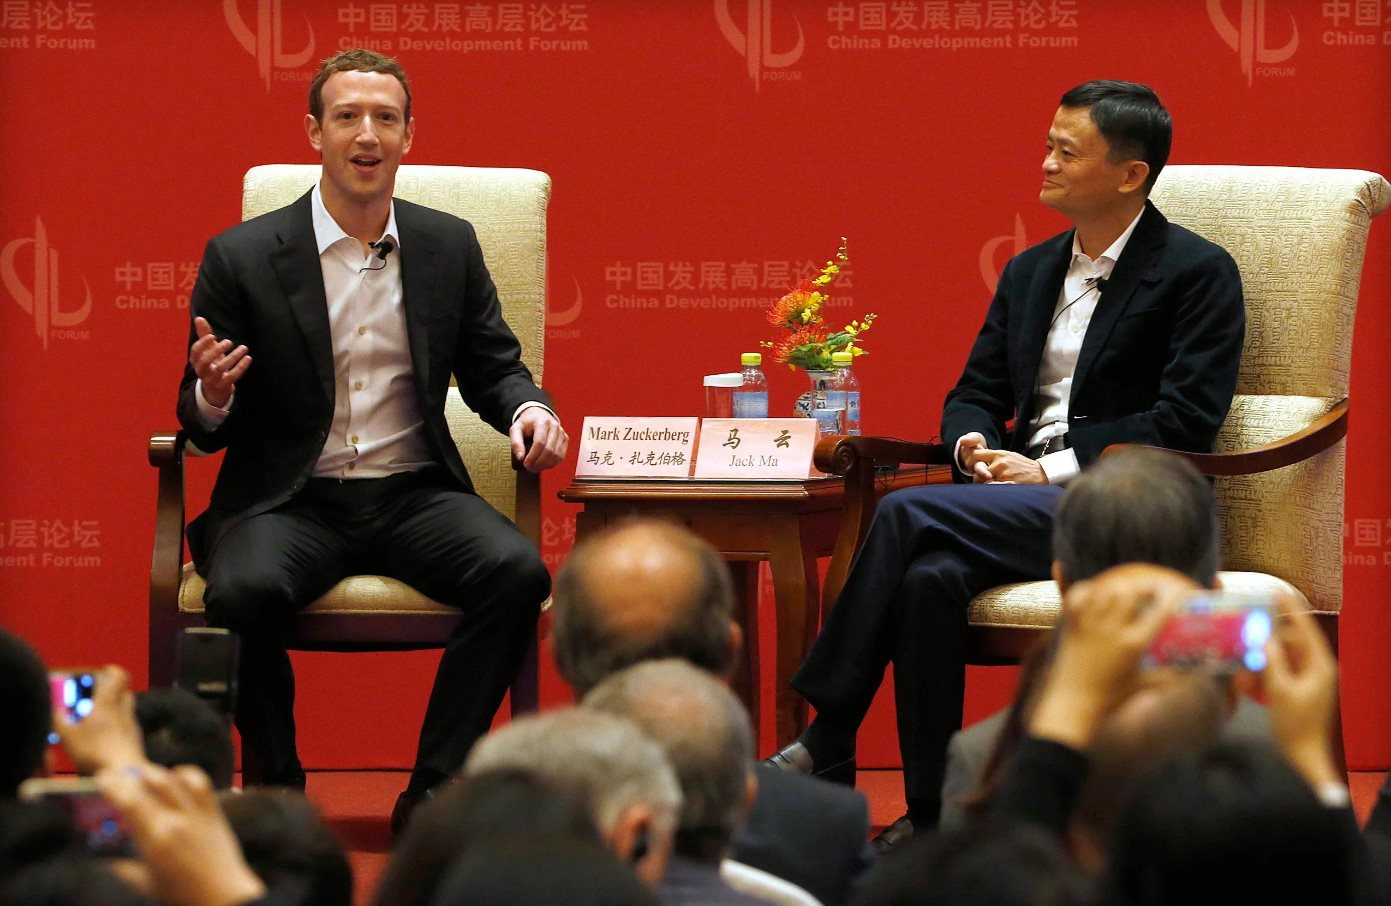 Facebook bị cấm ở Trung Quốc nhưng vẫn thu hàng tỷ USD từ nền kinh tế lớn thứ 2 thế giới - Ảnh 2.